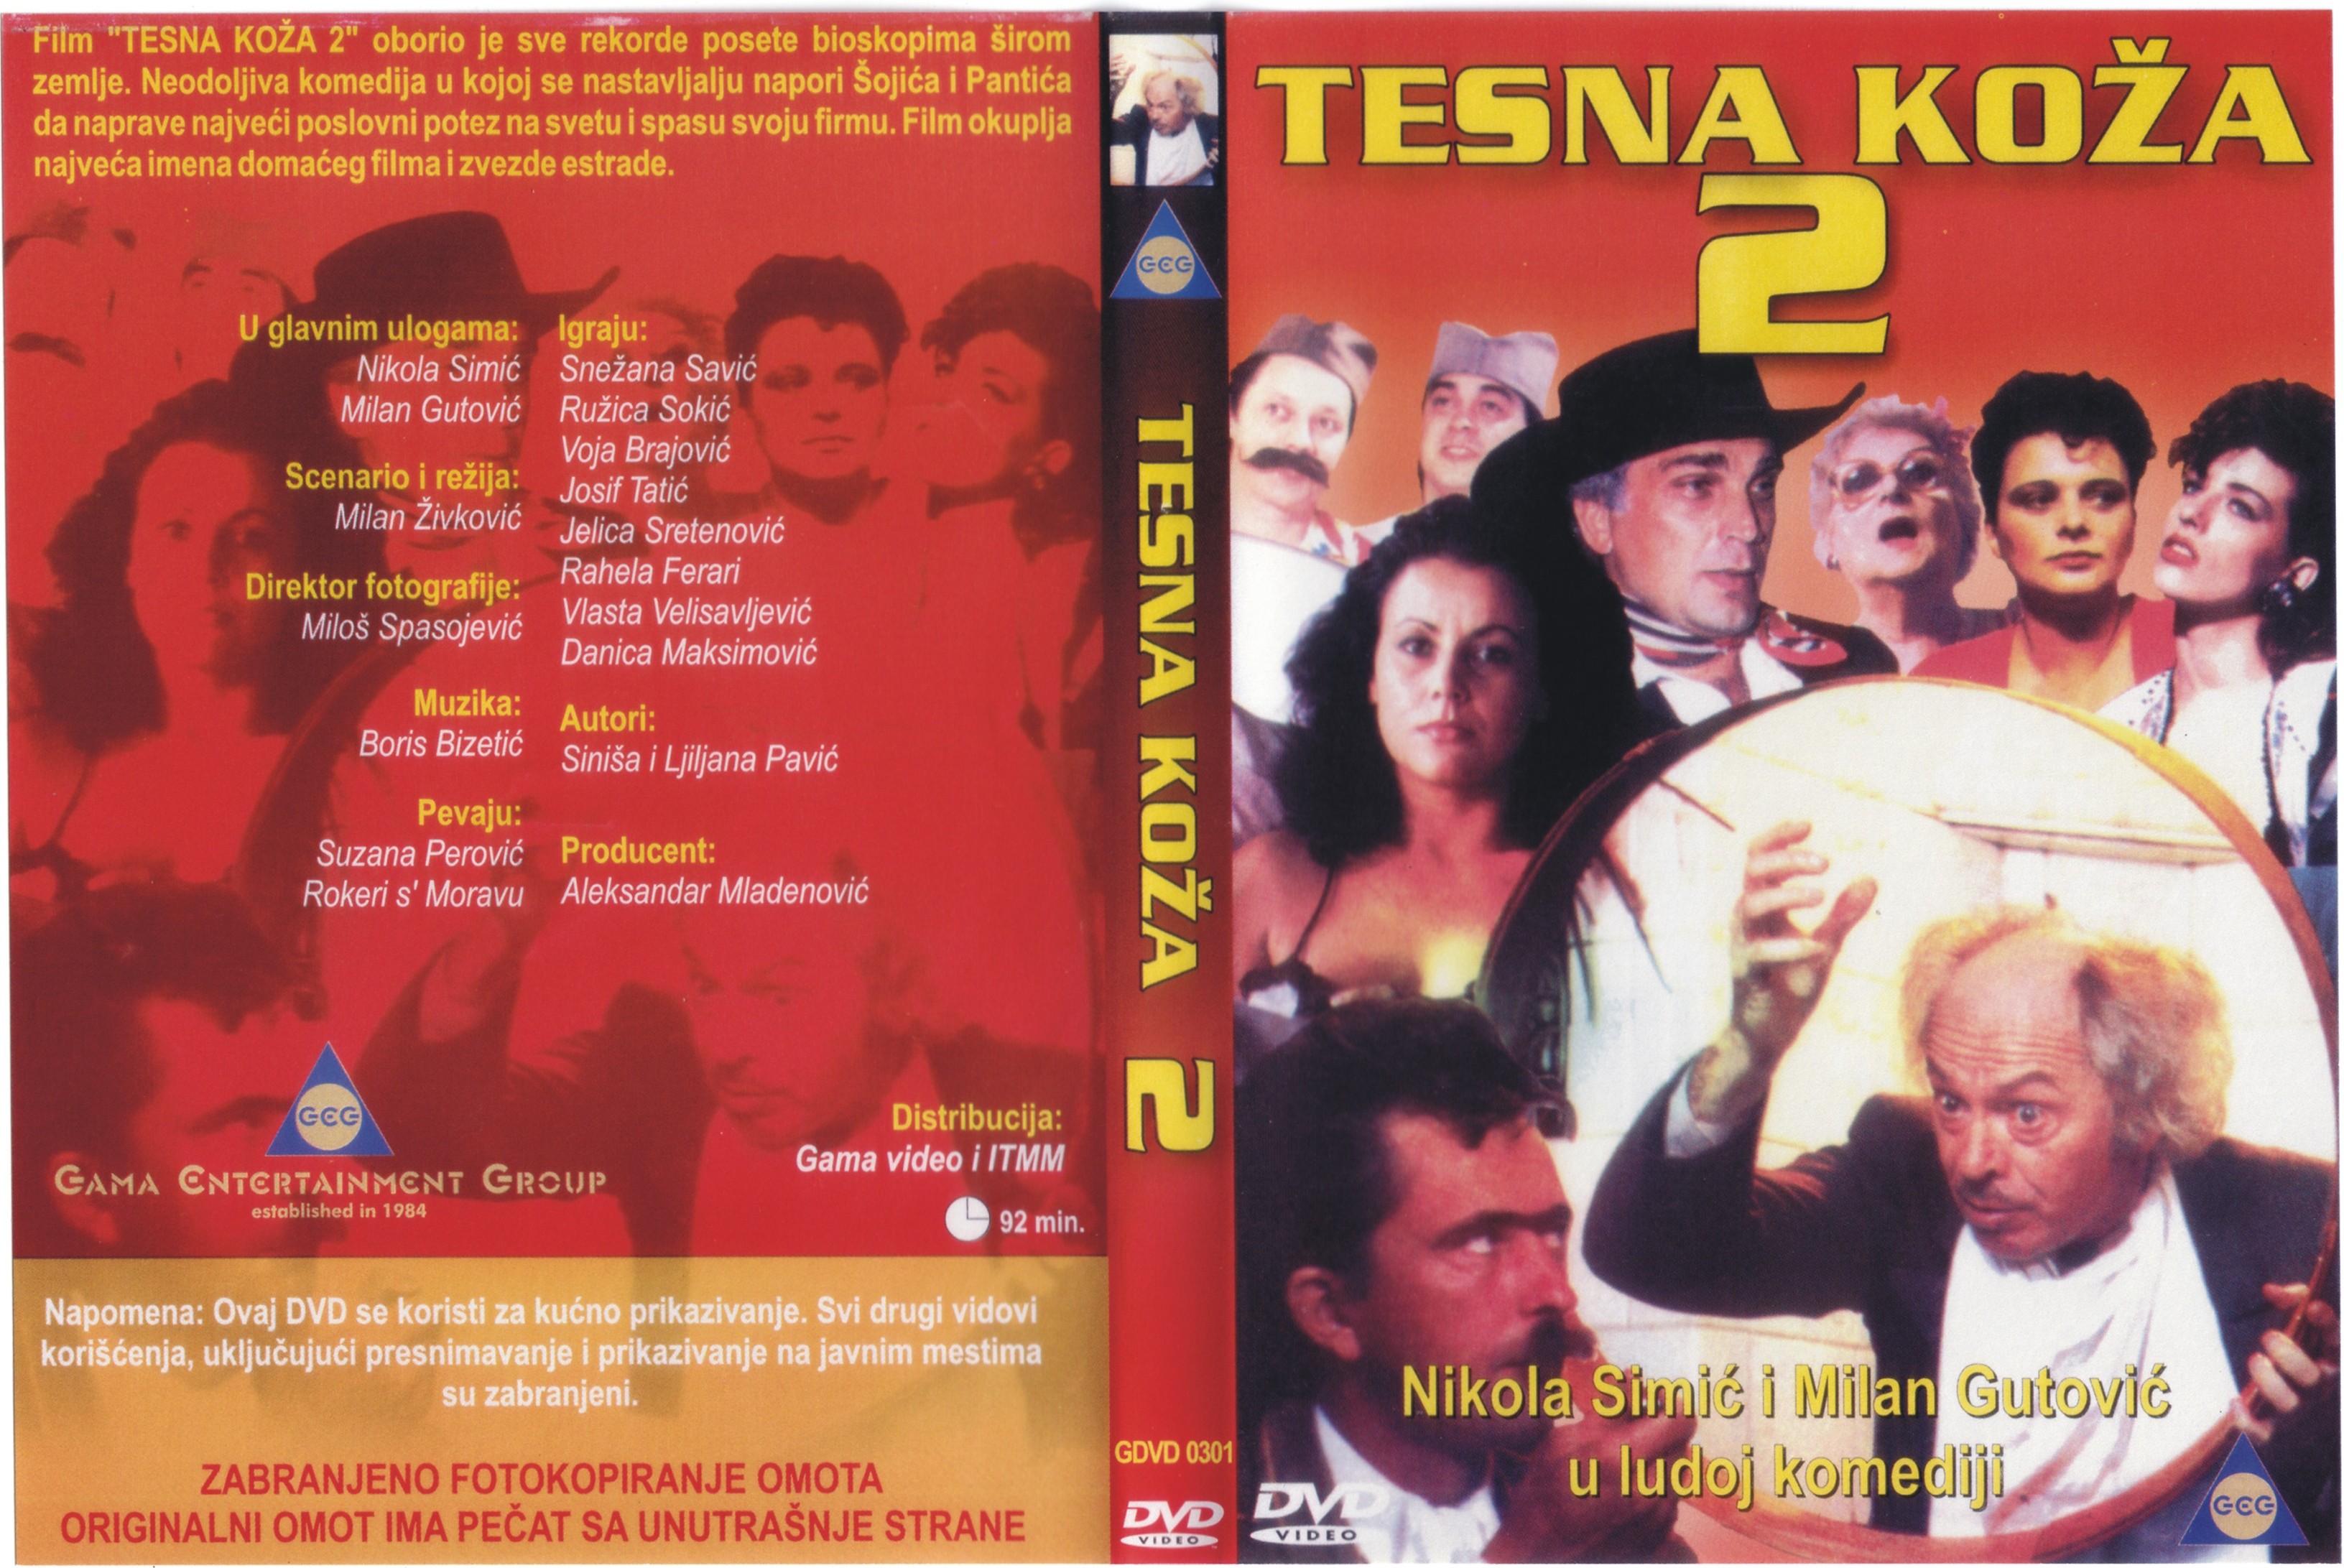 Click to view full size image -  DVD Cover - T - DVD - TESNA KOZA 2 - DVD - TESNA KOZA 2.jpg